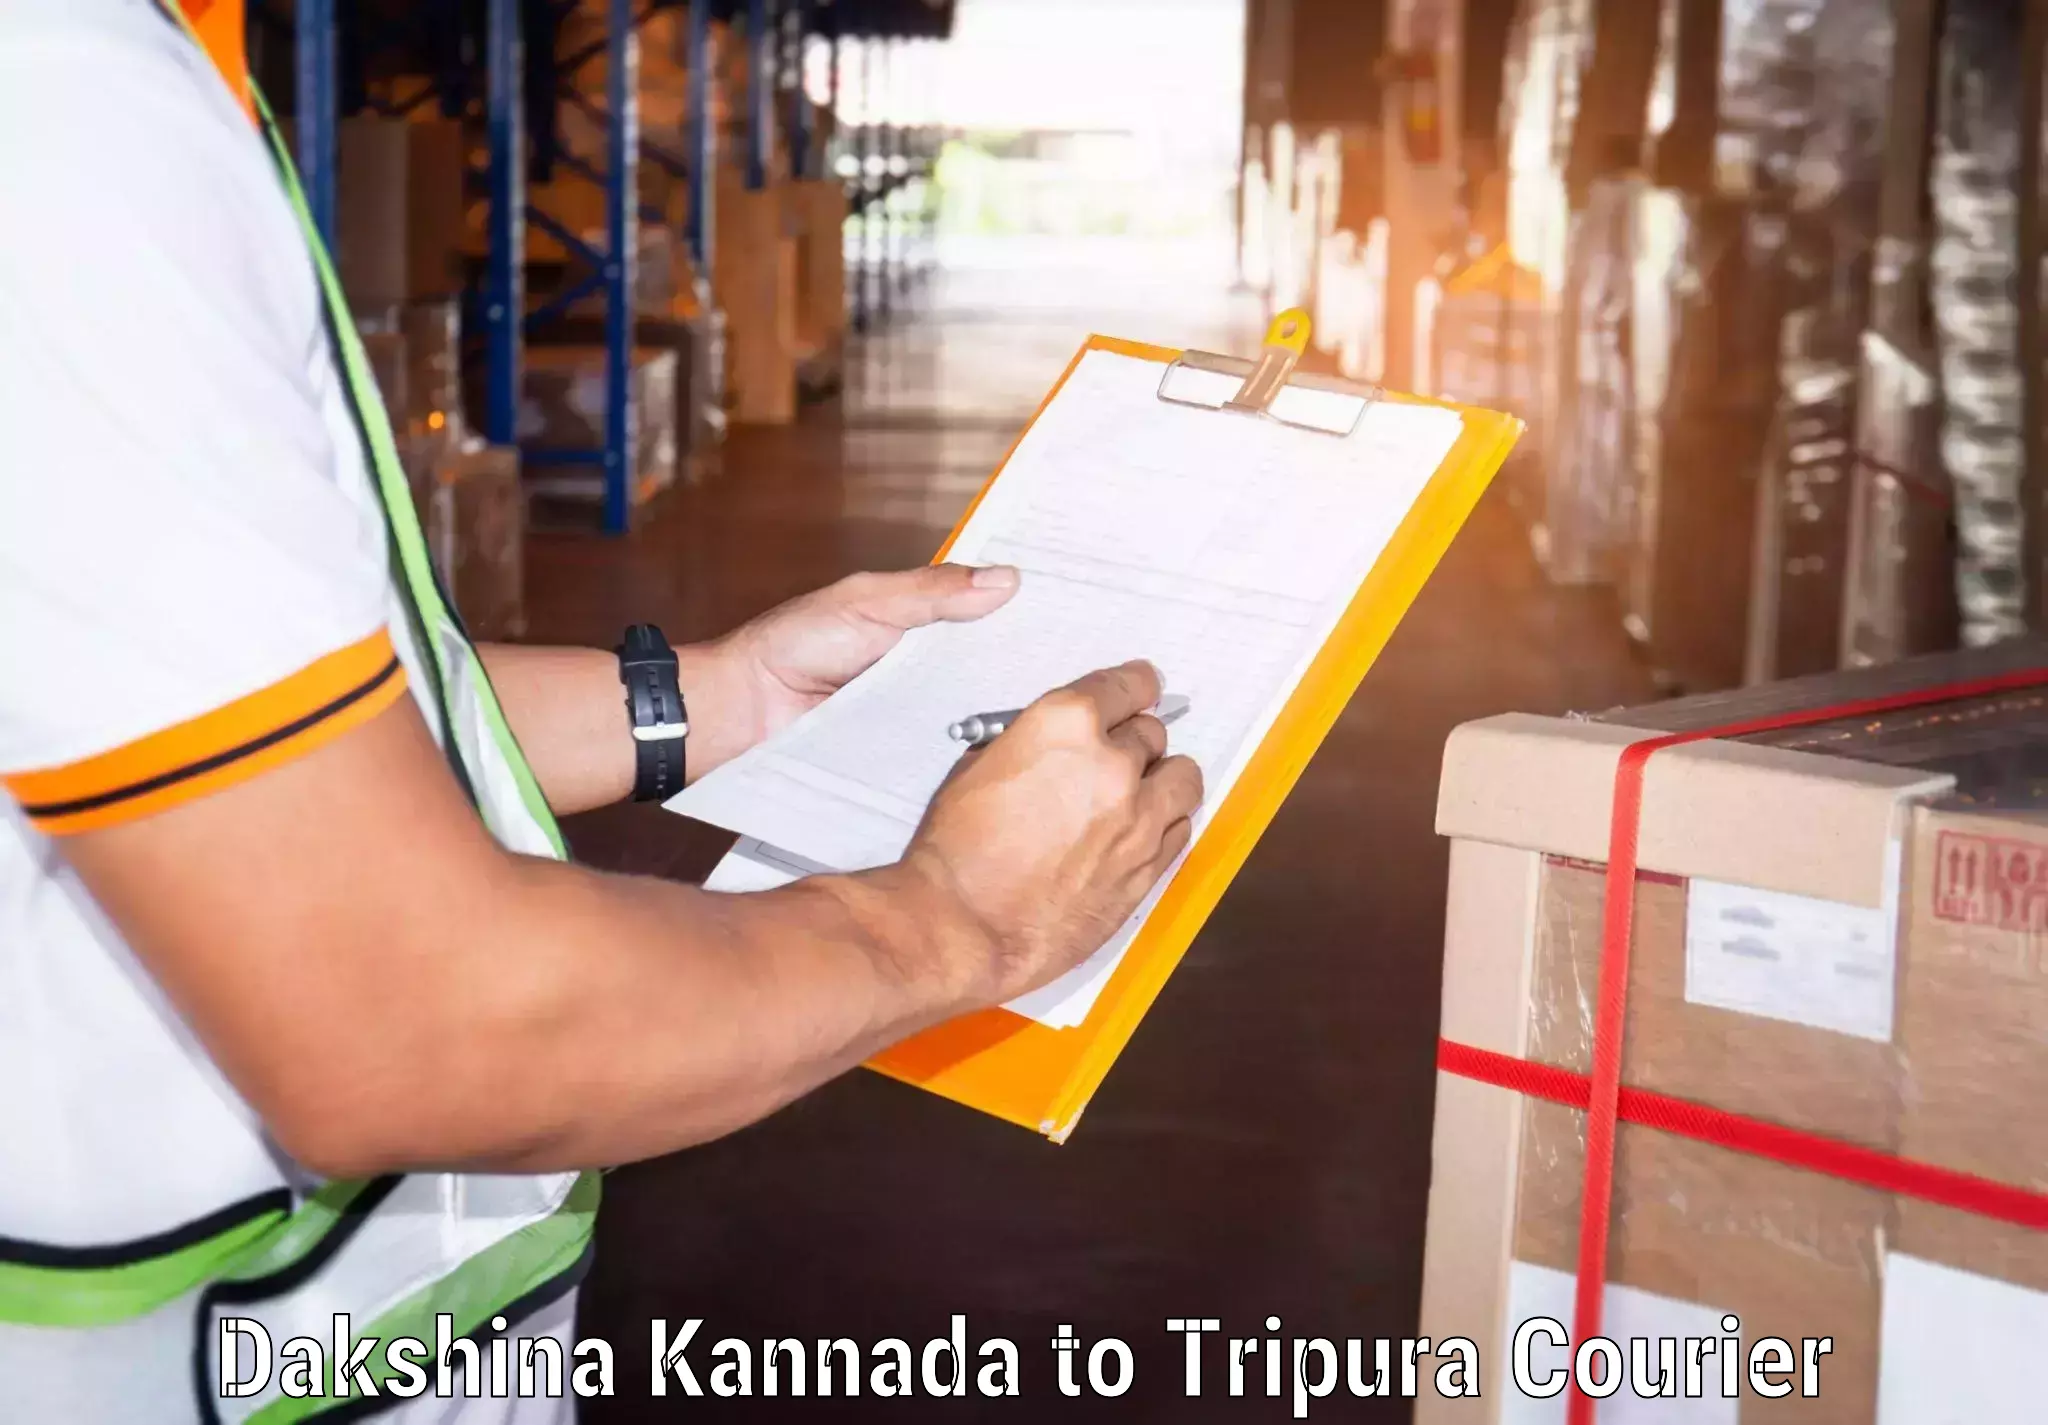 Custom courier packaging in Dakshina Kannada to IIIT Agartala